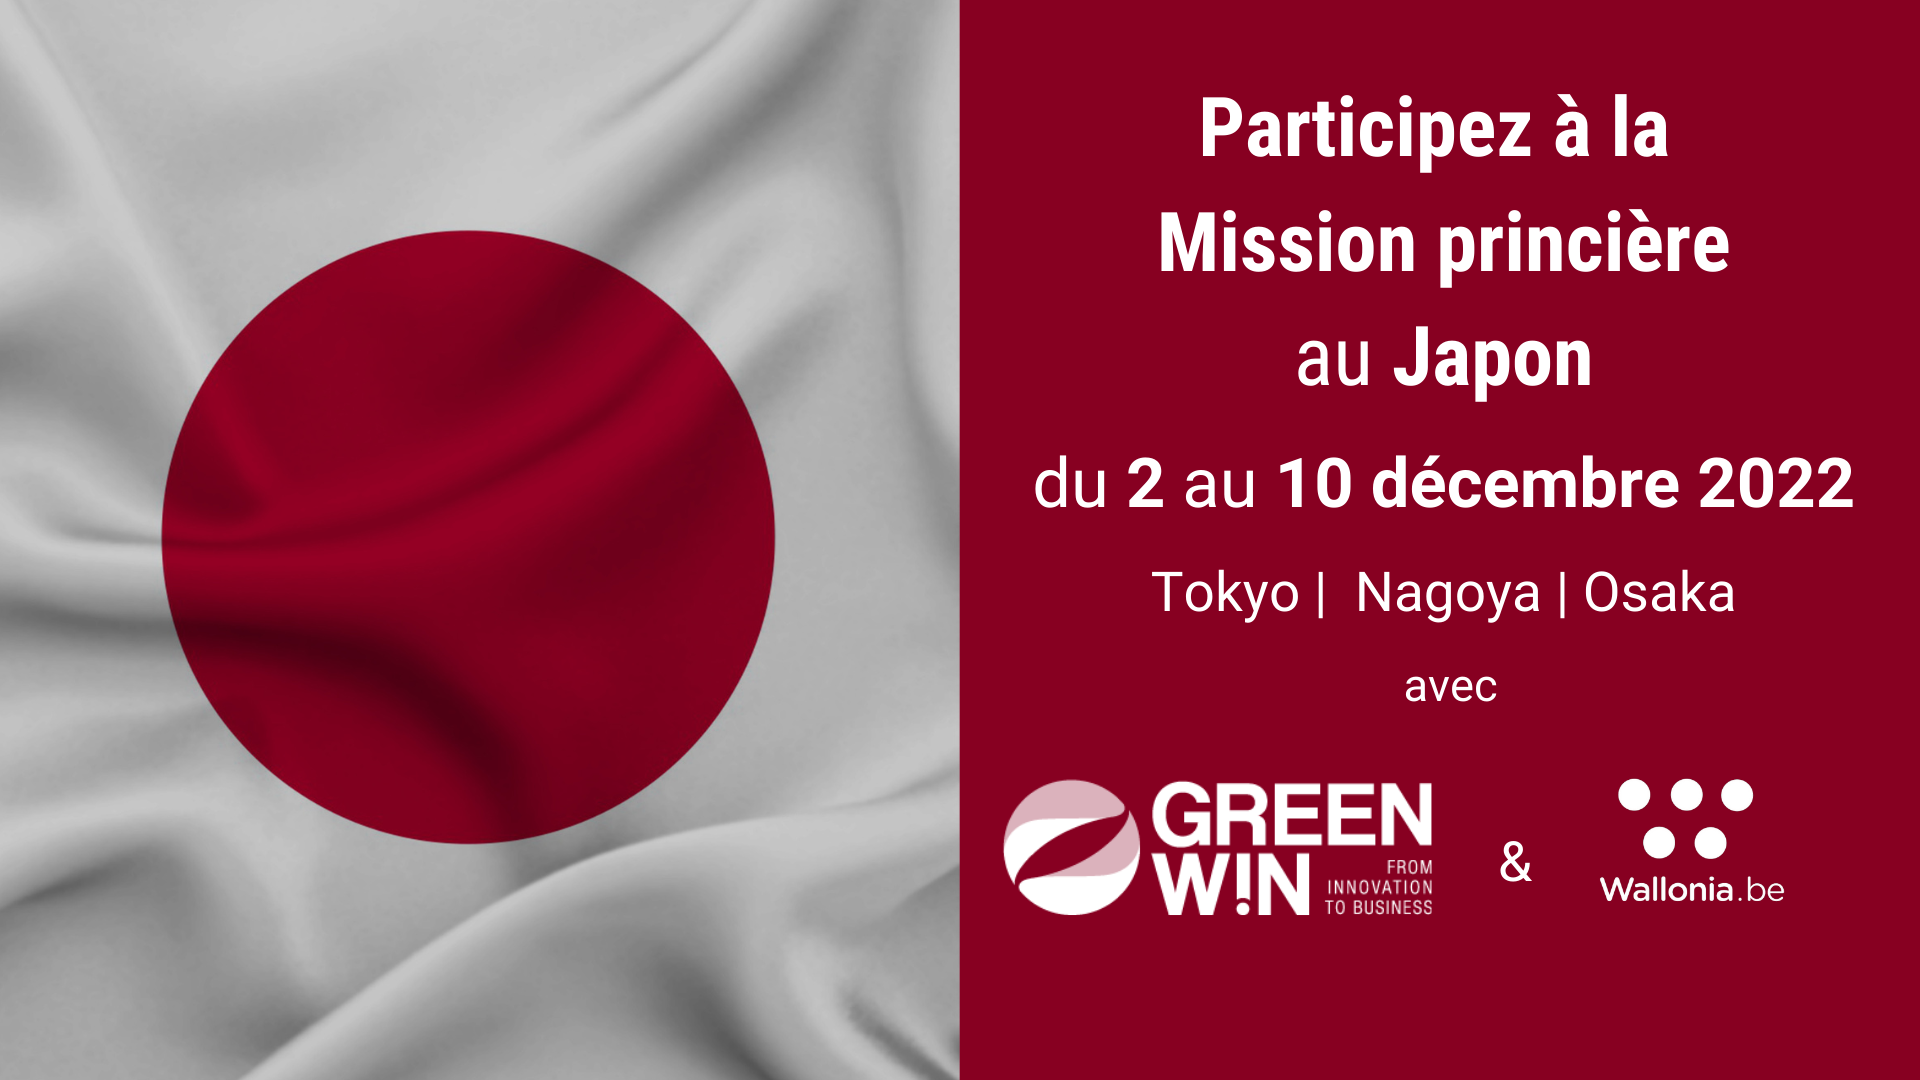 Participez à la Mission princière au Japon sous la présidence de S.A.R. la Princesse Astrid, Représentante de Sa Majesté le Roi